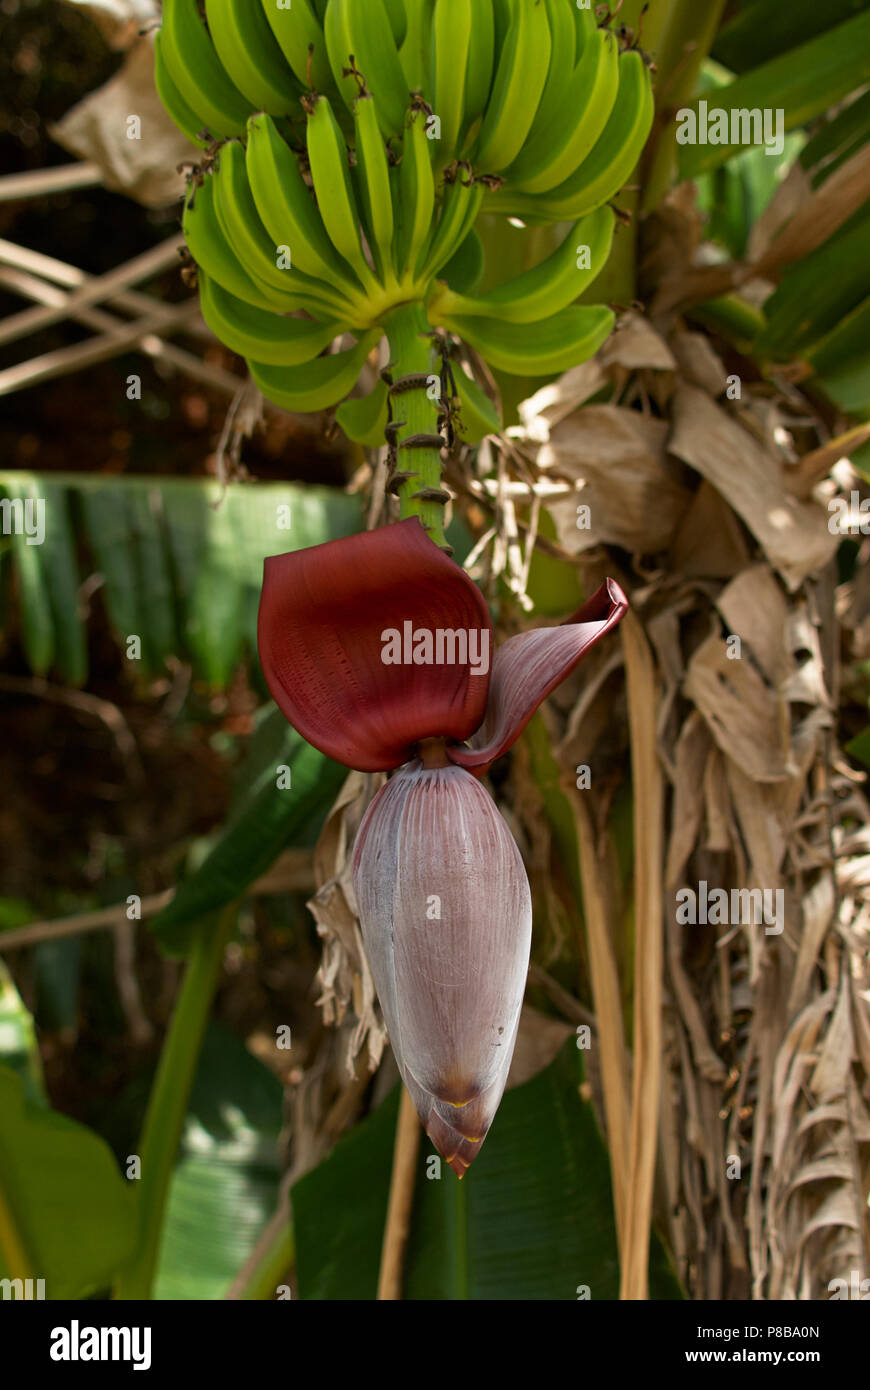 Banana (Musa acuminata) mostrante l'infiorescenza. Le piante di banana può essere usato per fare la birra, carta, vino, ed è una fonte di fibre, minerali e vitamine Foto Stock